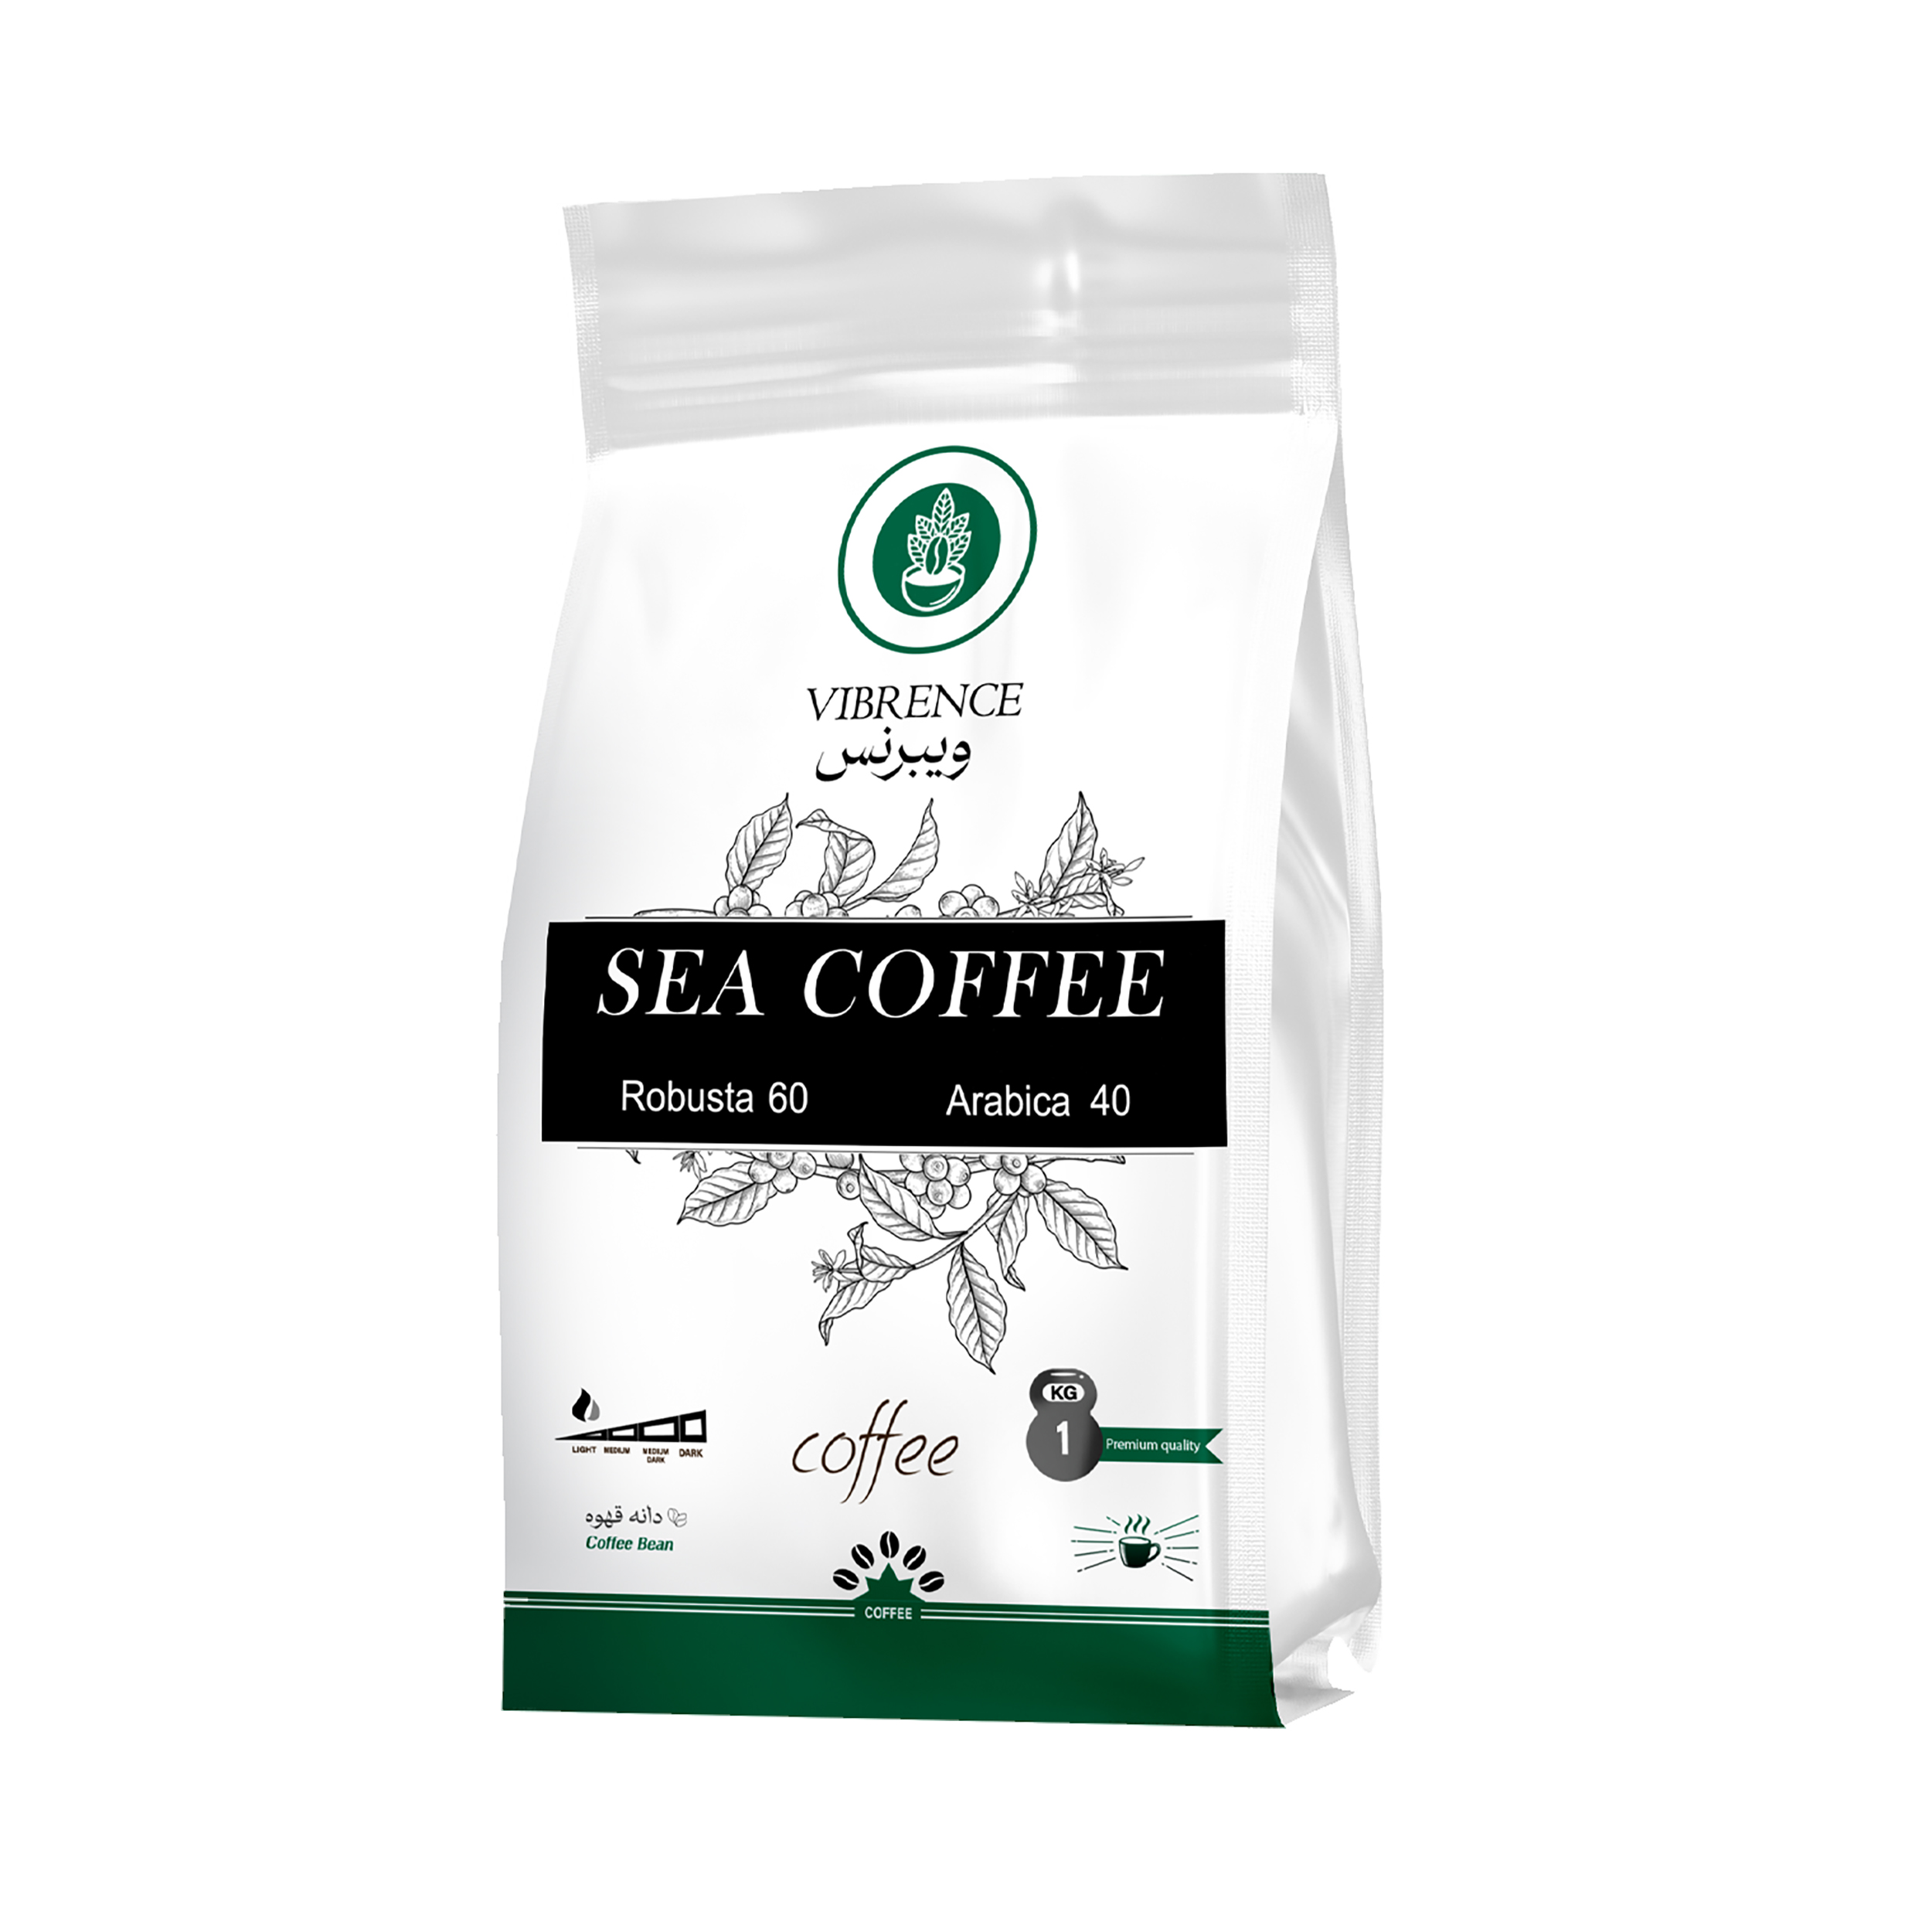 دانه قهوه 60 درصد روبوستا 40 درصد عربیکا Sea ویبرنس - 1 کیلوگرم